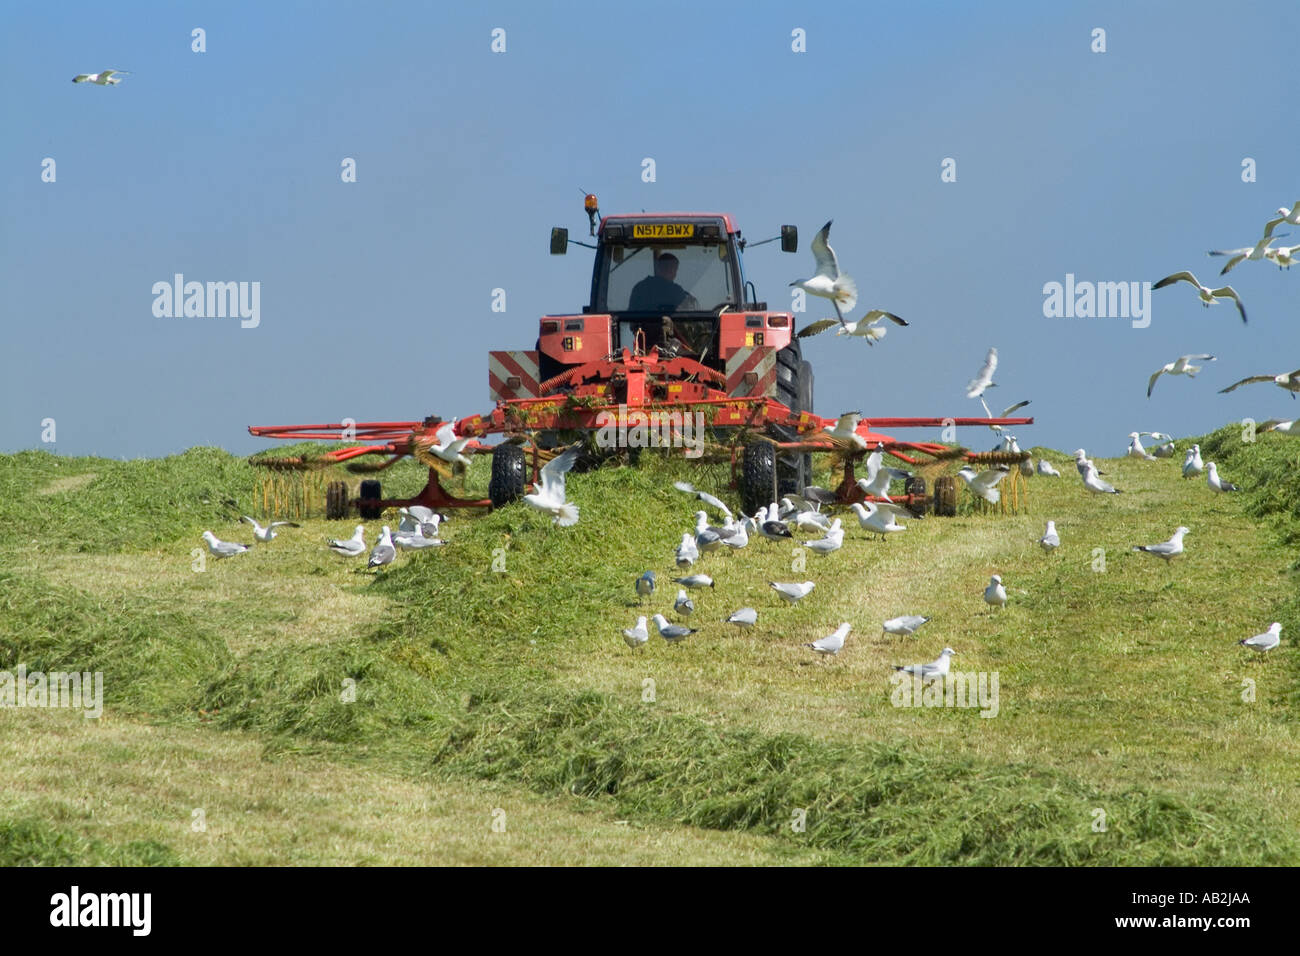 dh Traktor Harken Silage ERNTE UK Schottland Ausrüstung Gras für die Ernte Möwen Fütterung Vögel Flock Bauernhof Feld Maschinen Heu Farmland Stockfoto